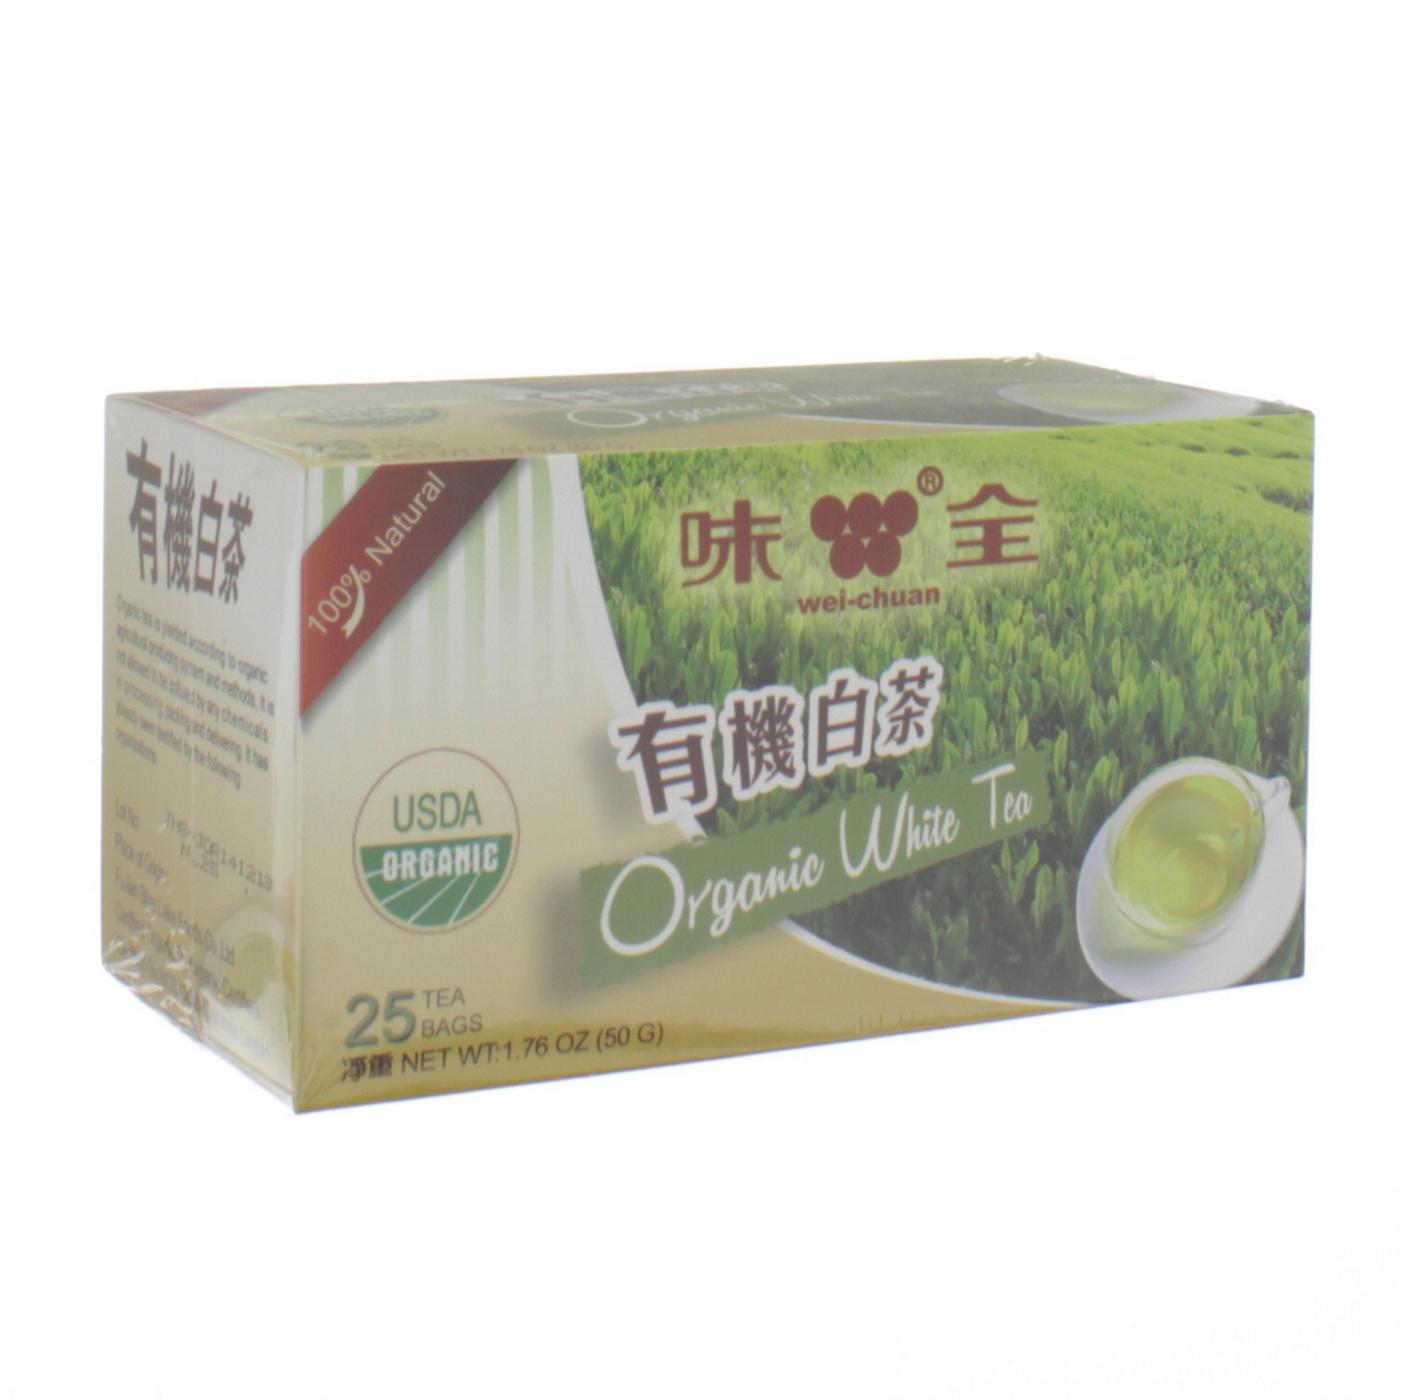 Wei-Chuan Organic White Tea; image 1 of 2